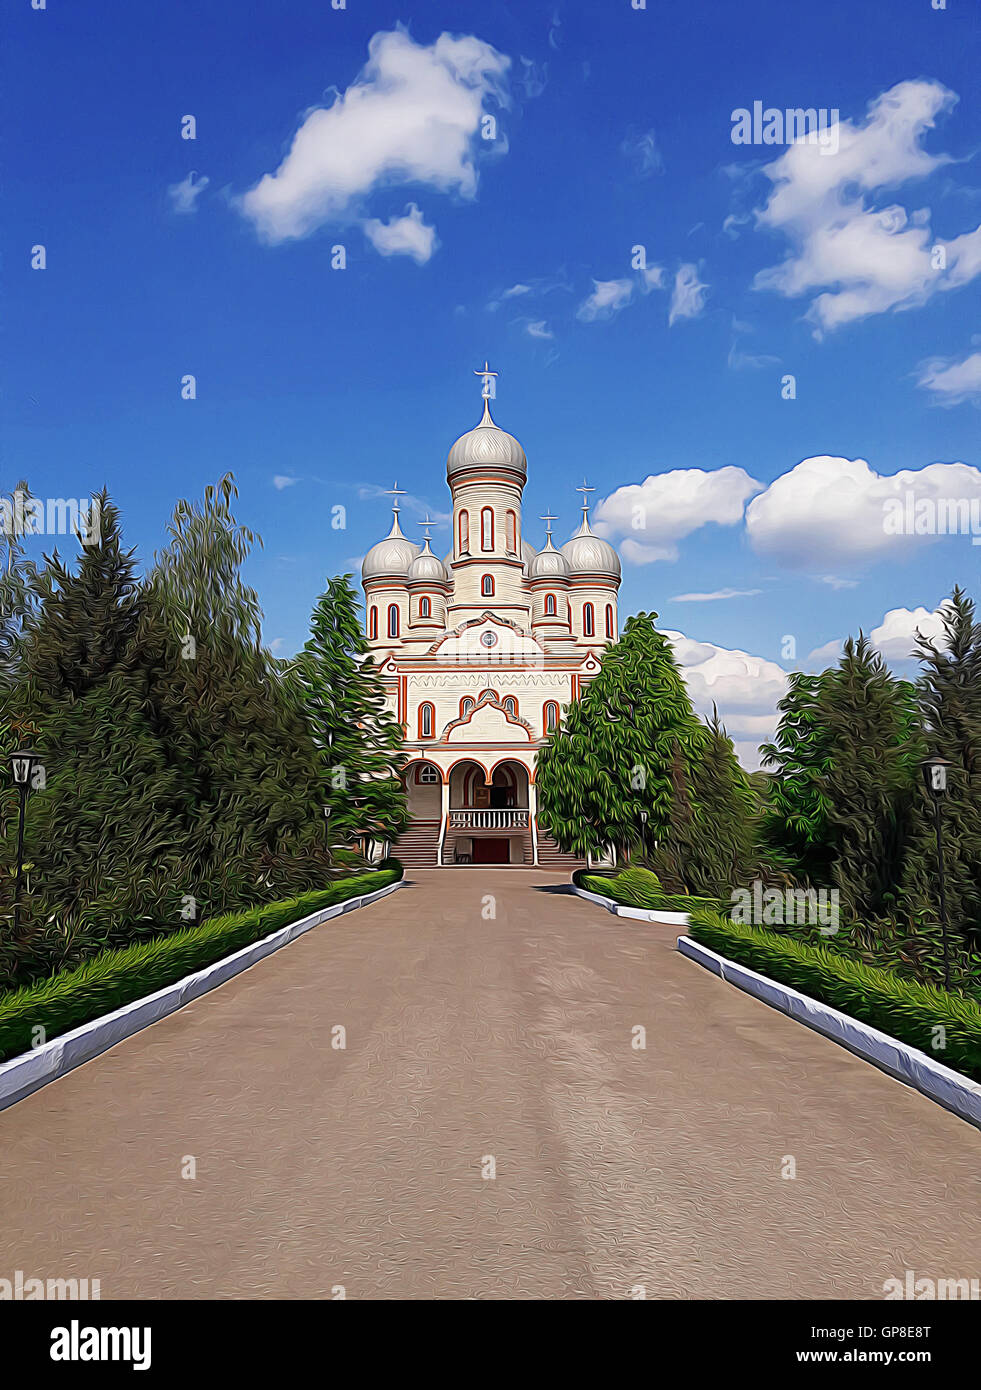 Illustration d'une église orthodoxe avec l'allée d'arbres et de jardins verdoyants au-dessus au-dessous d'un ciel bleu Banque D'Images